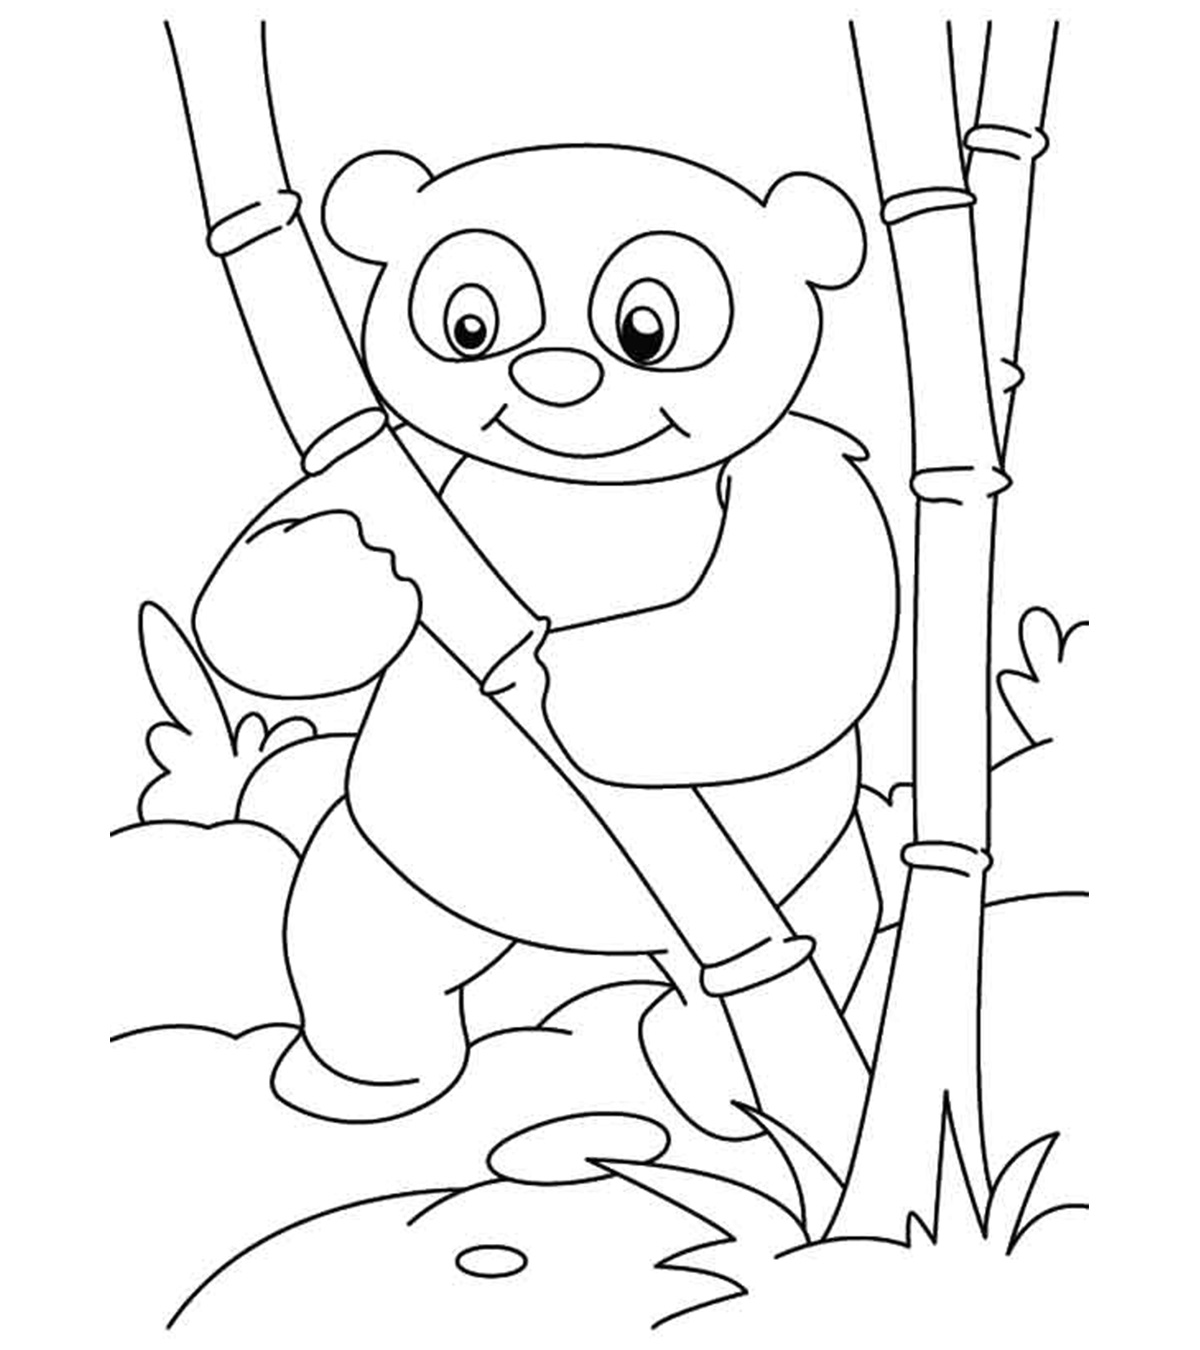 为你的小家伙准备的25张熊猫涂色页